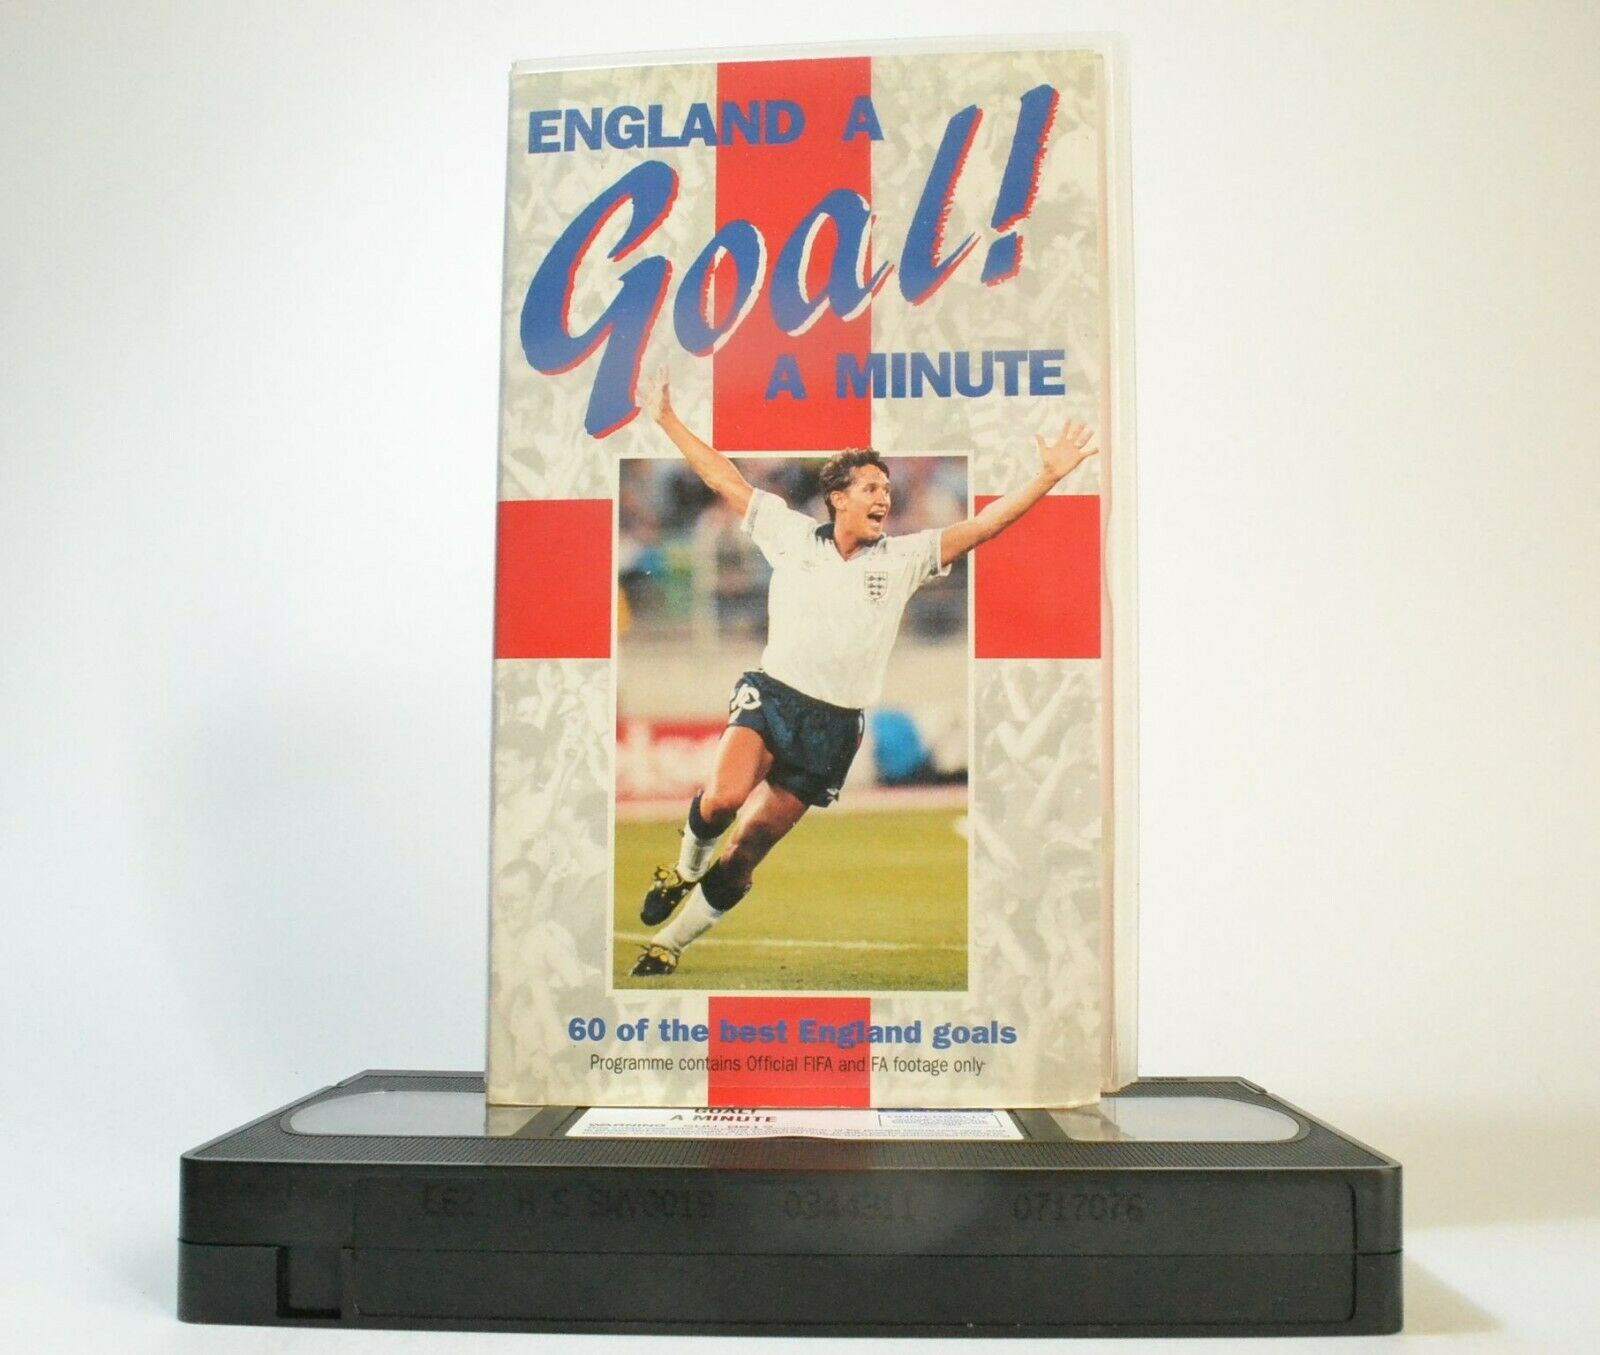 England A Goal A Minute - Best Goals - Historical Football - Gary Lineker - VHS-